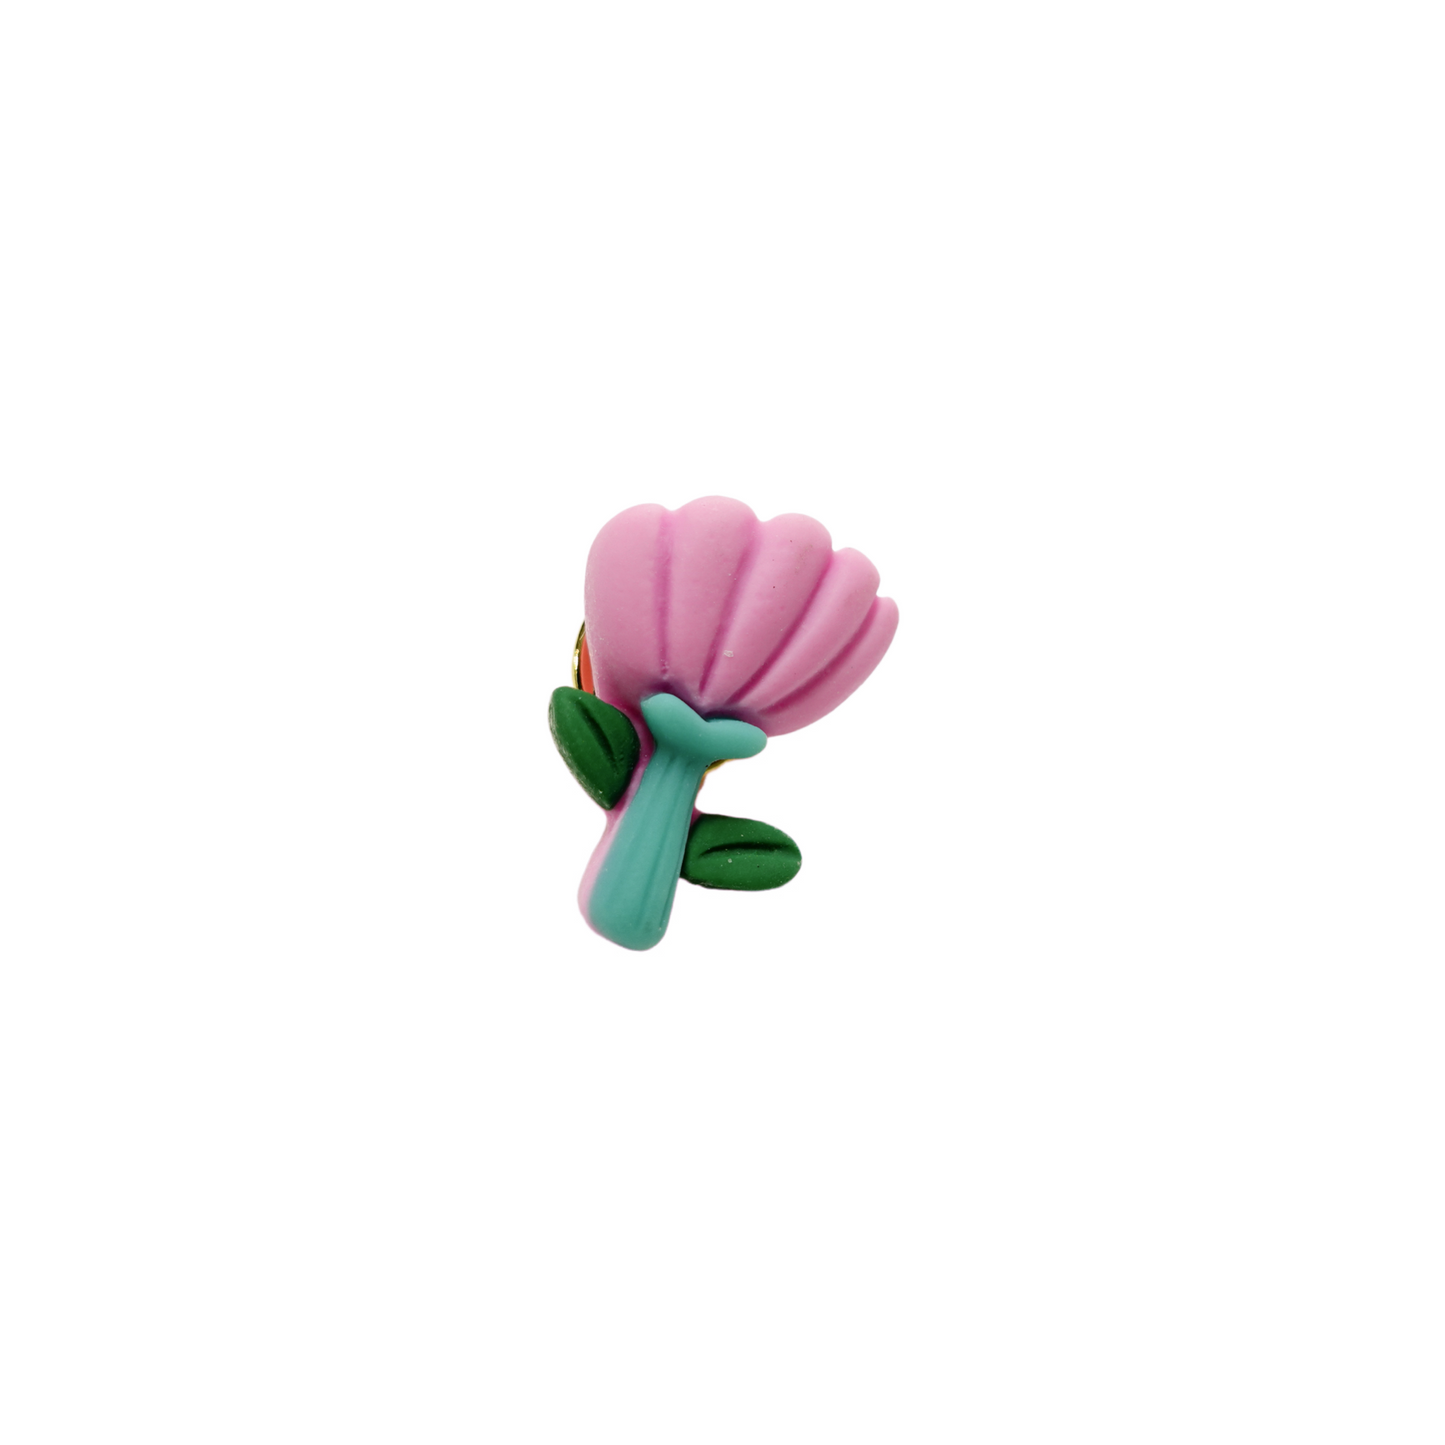 Miniature Flower Pin